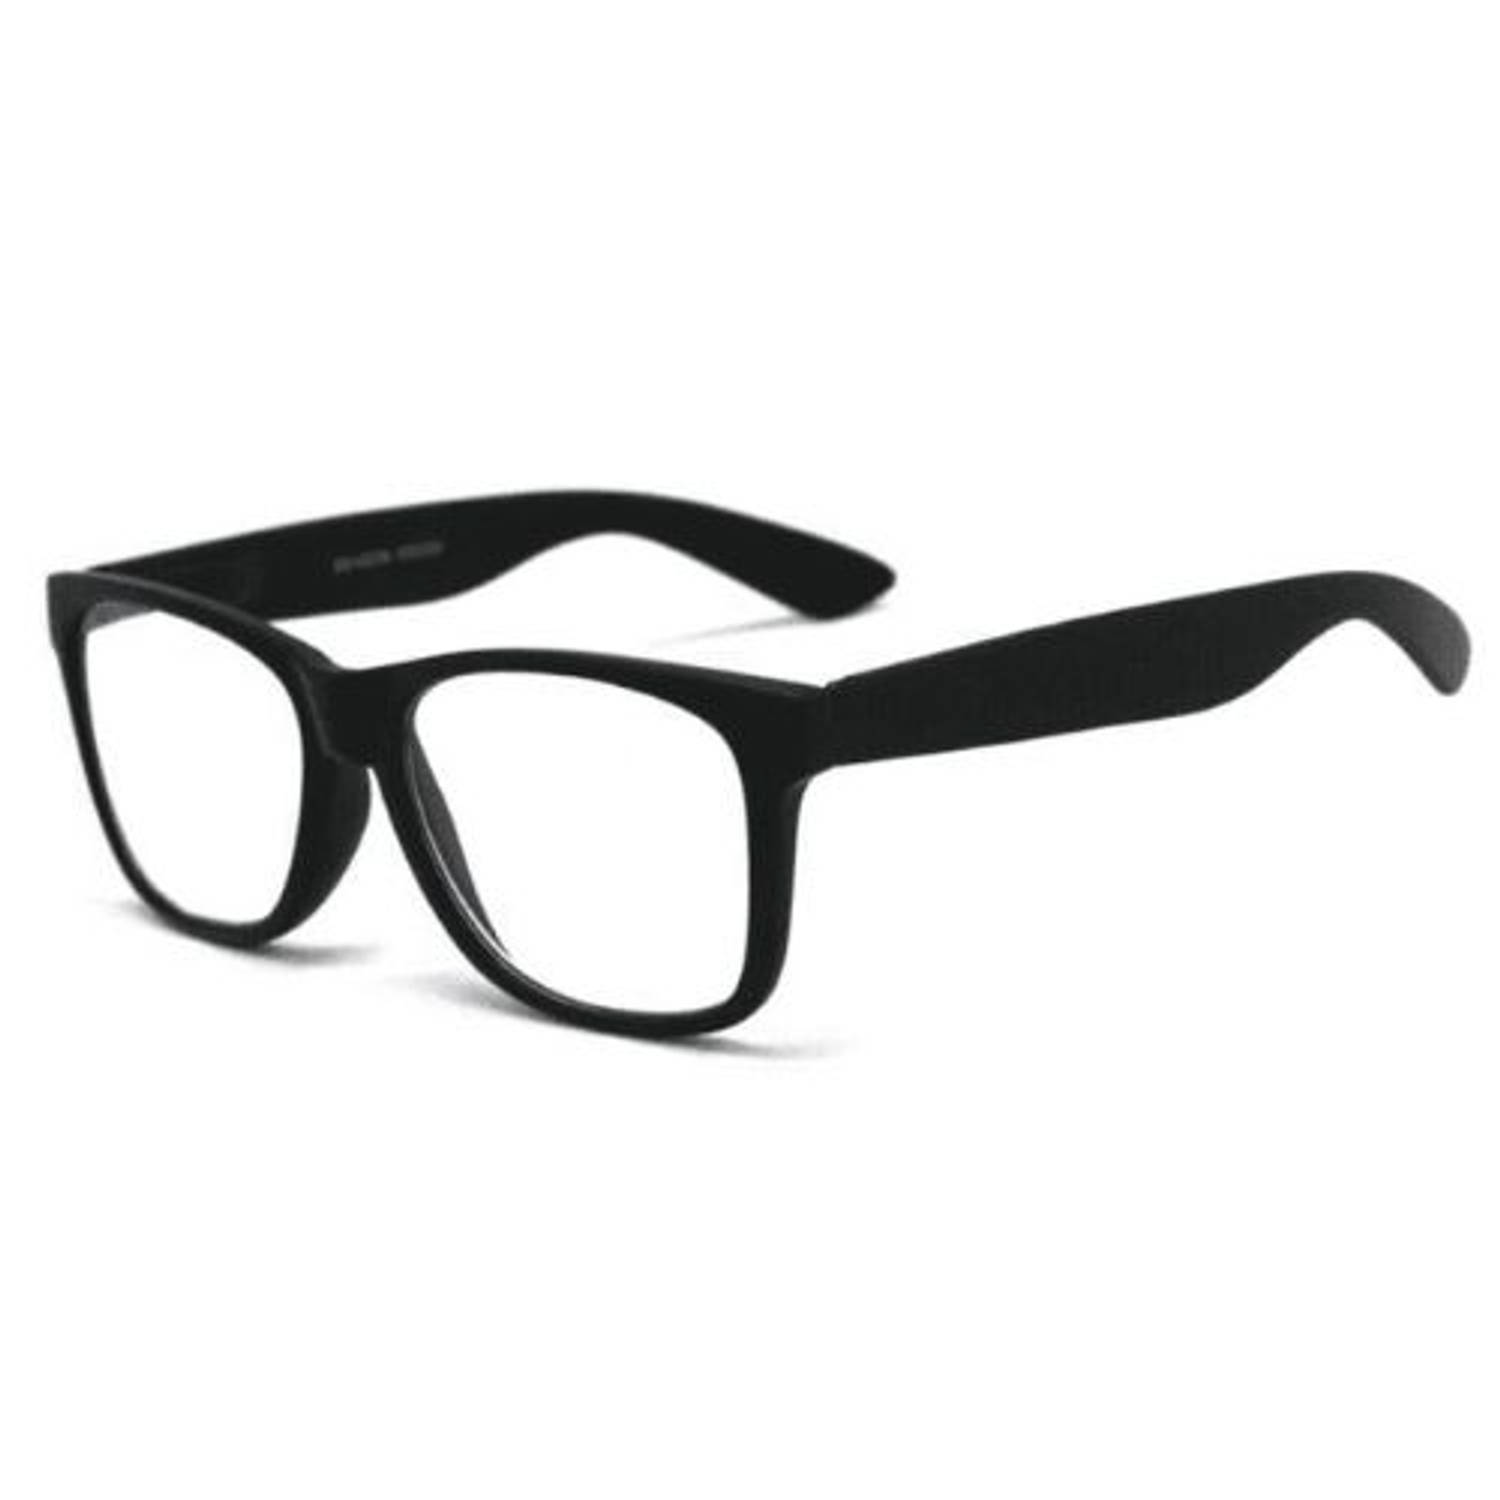 Orange85 Leesbril Zwart +3.50 - Heren - Dames - Leesbrillen - Met sterkte +3 - Trendy - Lees bril - Mat zwart